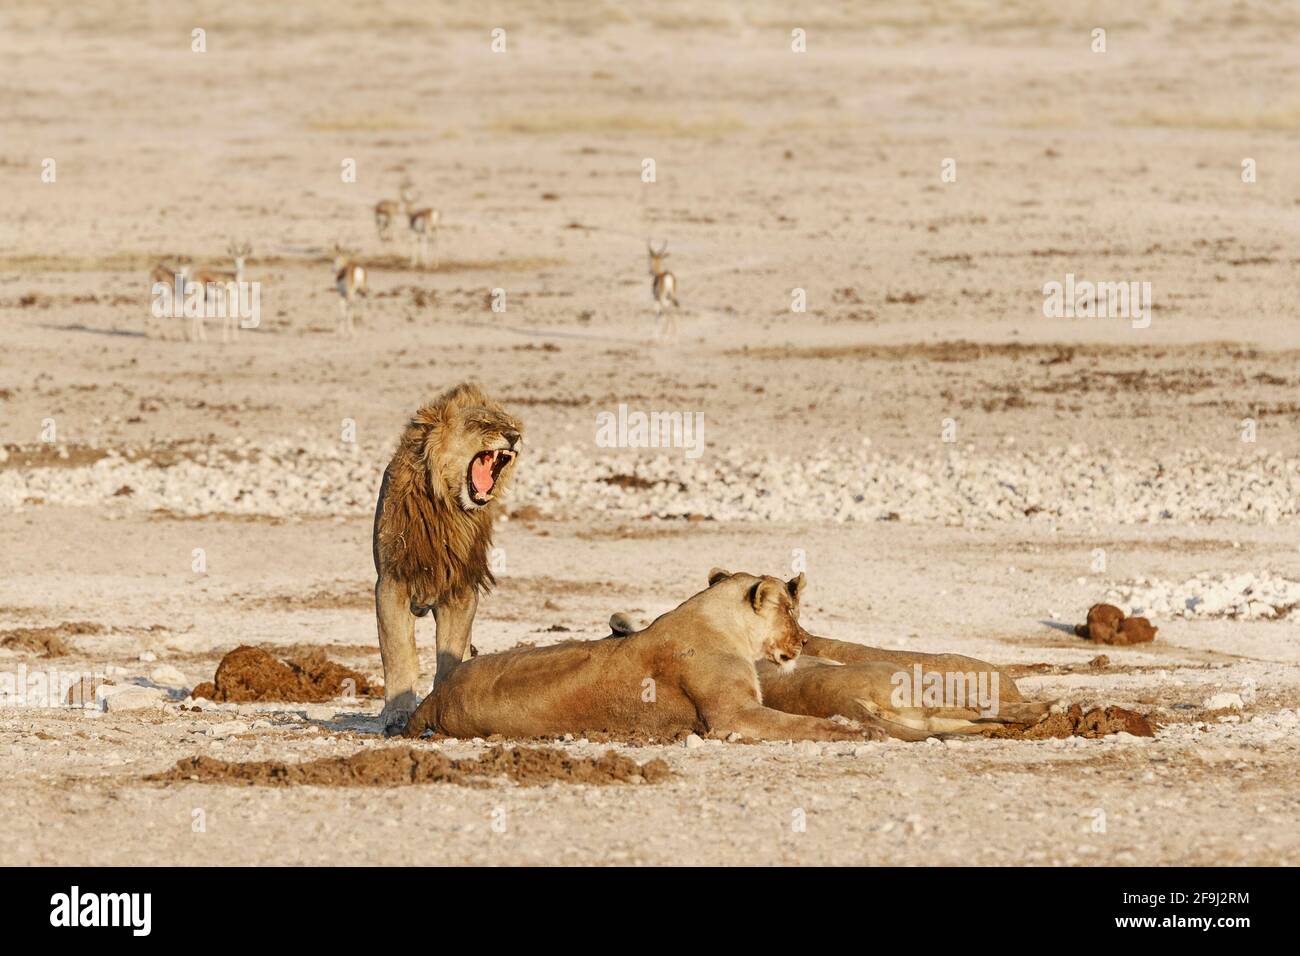 Lion africain (Panthera Leo) fierté d'un trou d'eau. Parc national d'Etosha, Namibie, Afrique Banque D'Images